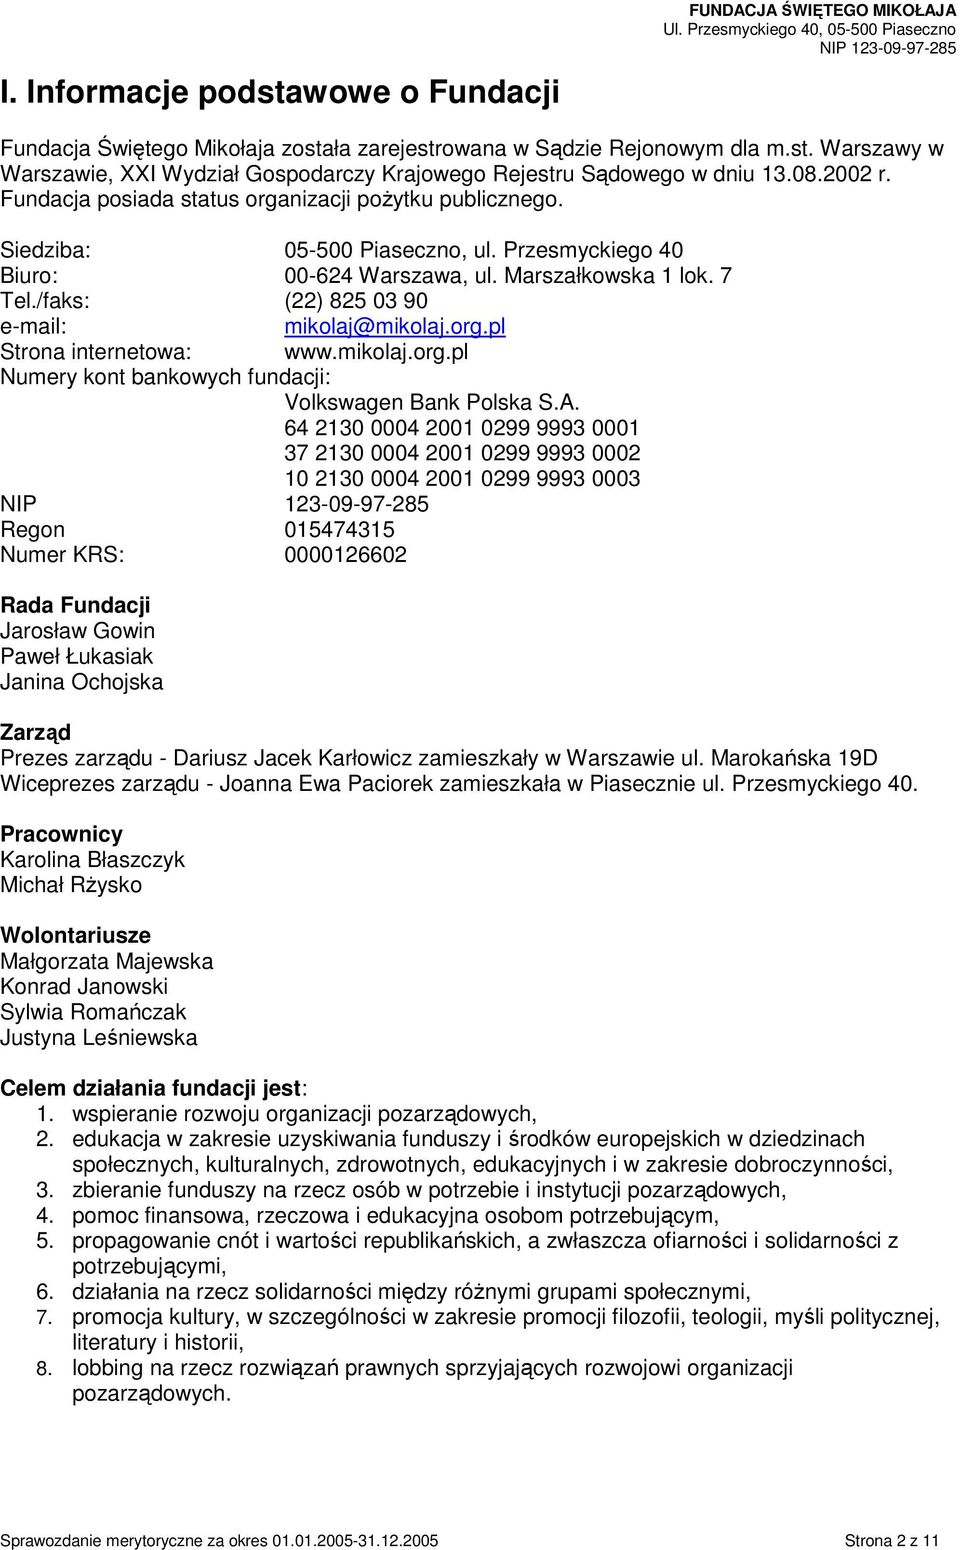 /faks: (22) 825 03 90 e-mail: mikolaj@mikolaj.org.pl Strona internetowa: www.mikolaj.org.pl Numery kont bankowych fundacji: Volkswagen Bank Polska S.A.